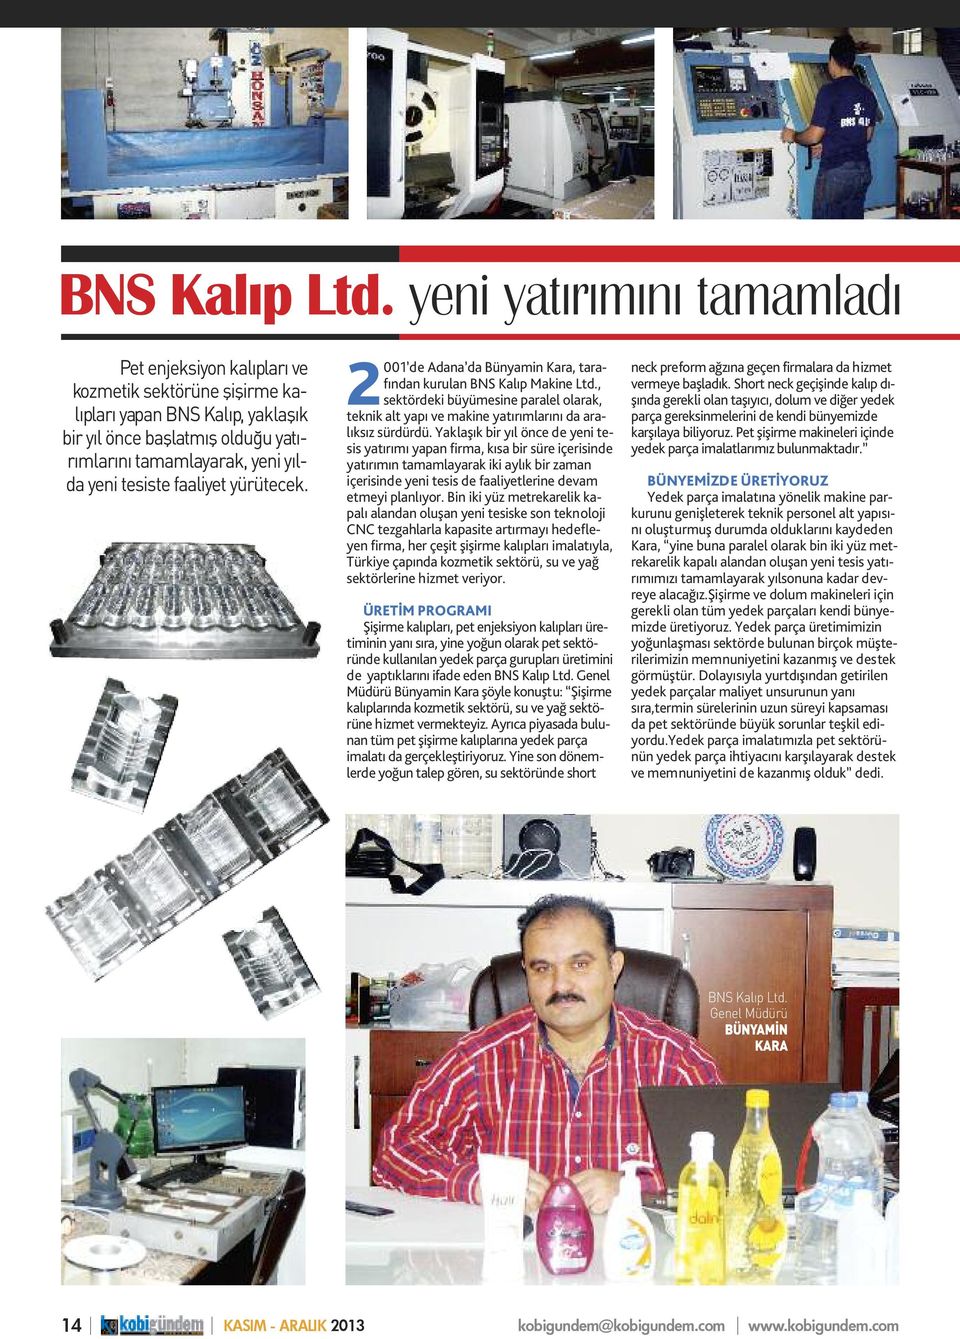 faaliyet yürütecek. 2001 de Adana da Bünyamin Kara, tarafından kurulan BNS Kalıp Makine Ltd., sektördeki büyümesine paralel olarak, teknik alt yapı ve makine yatırımlarını da aralıksız sürdürdü.